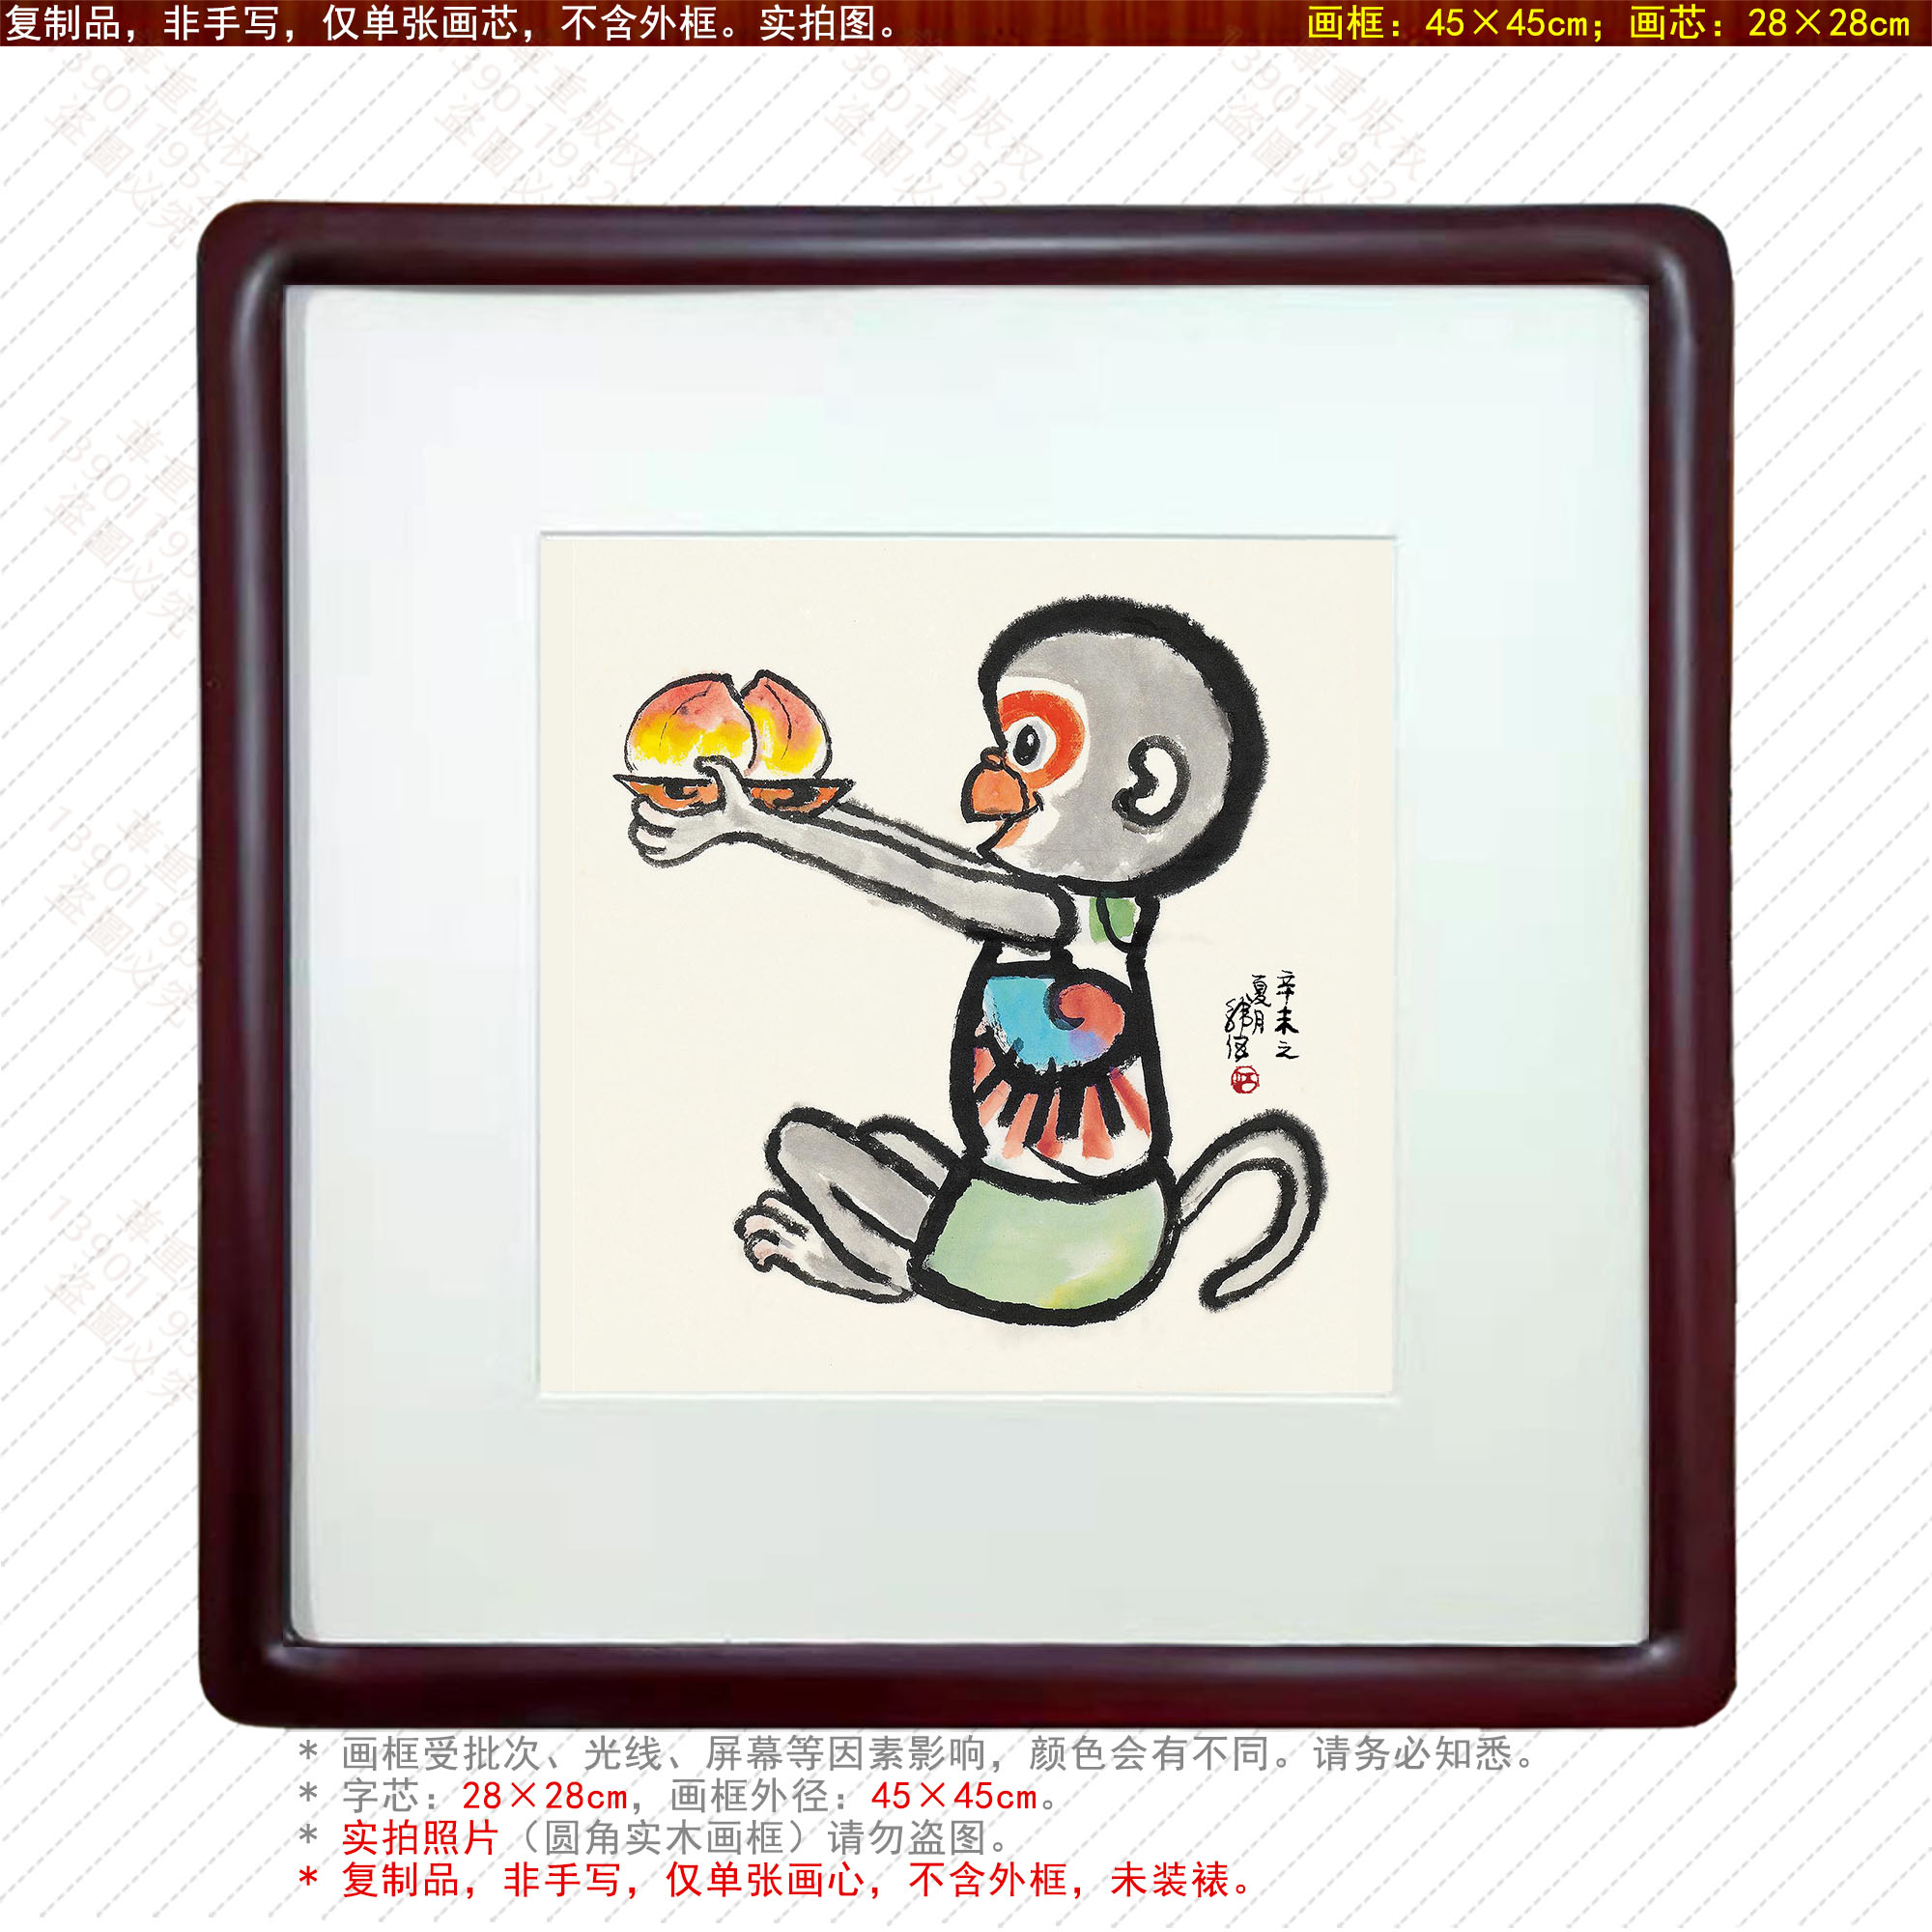 韩伍国画猴子献桃图祝寿献寿寿礼长寿健康多子多福客厅装饰画中式